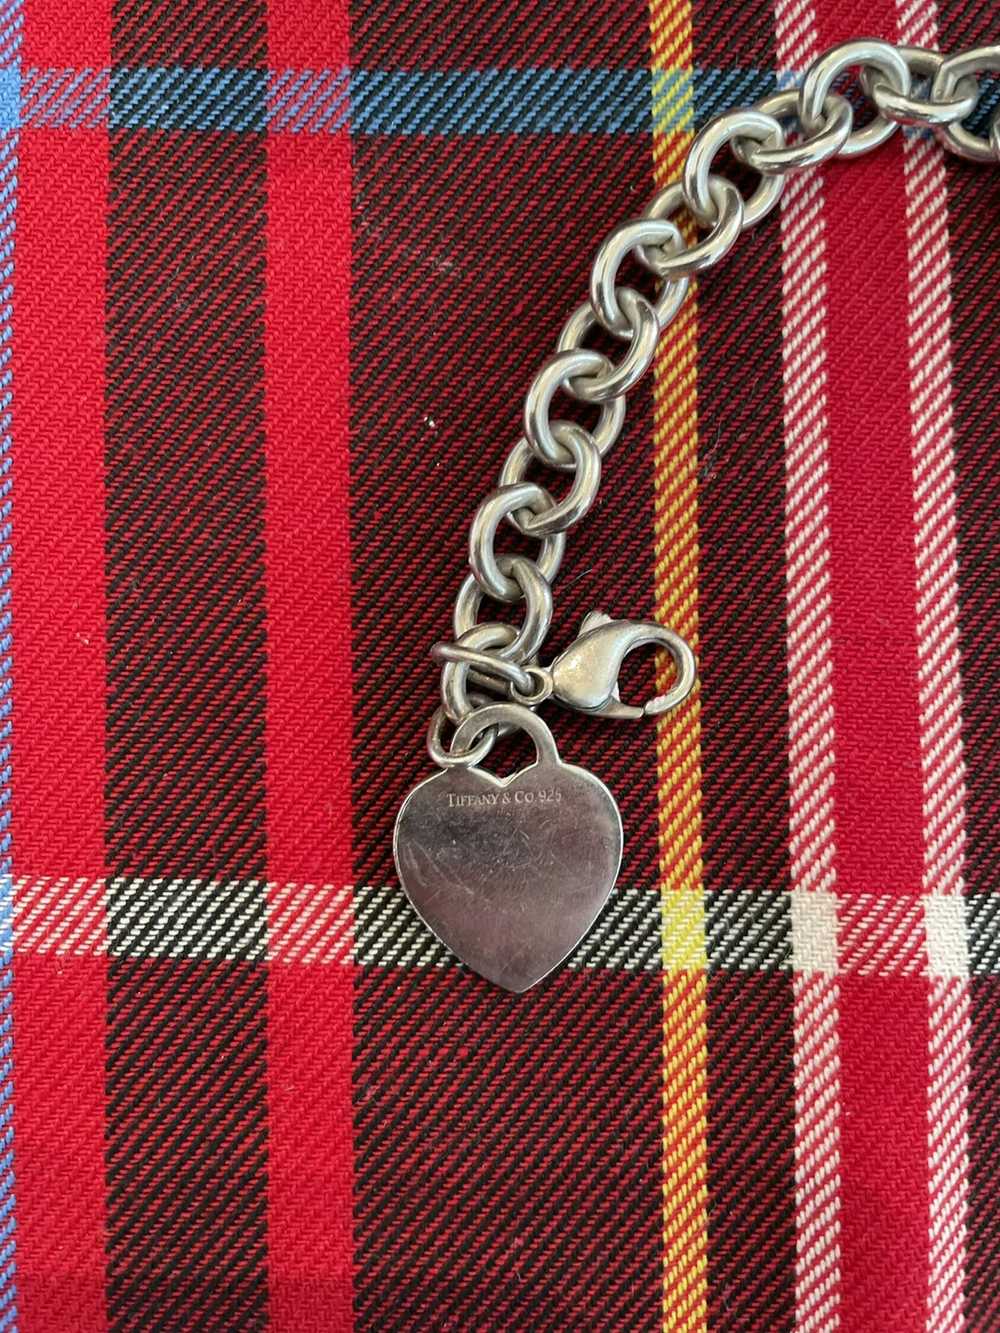 Tiffany & Co. Tiffany and Co. Heart Bracelet - image 3